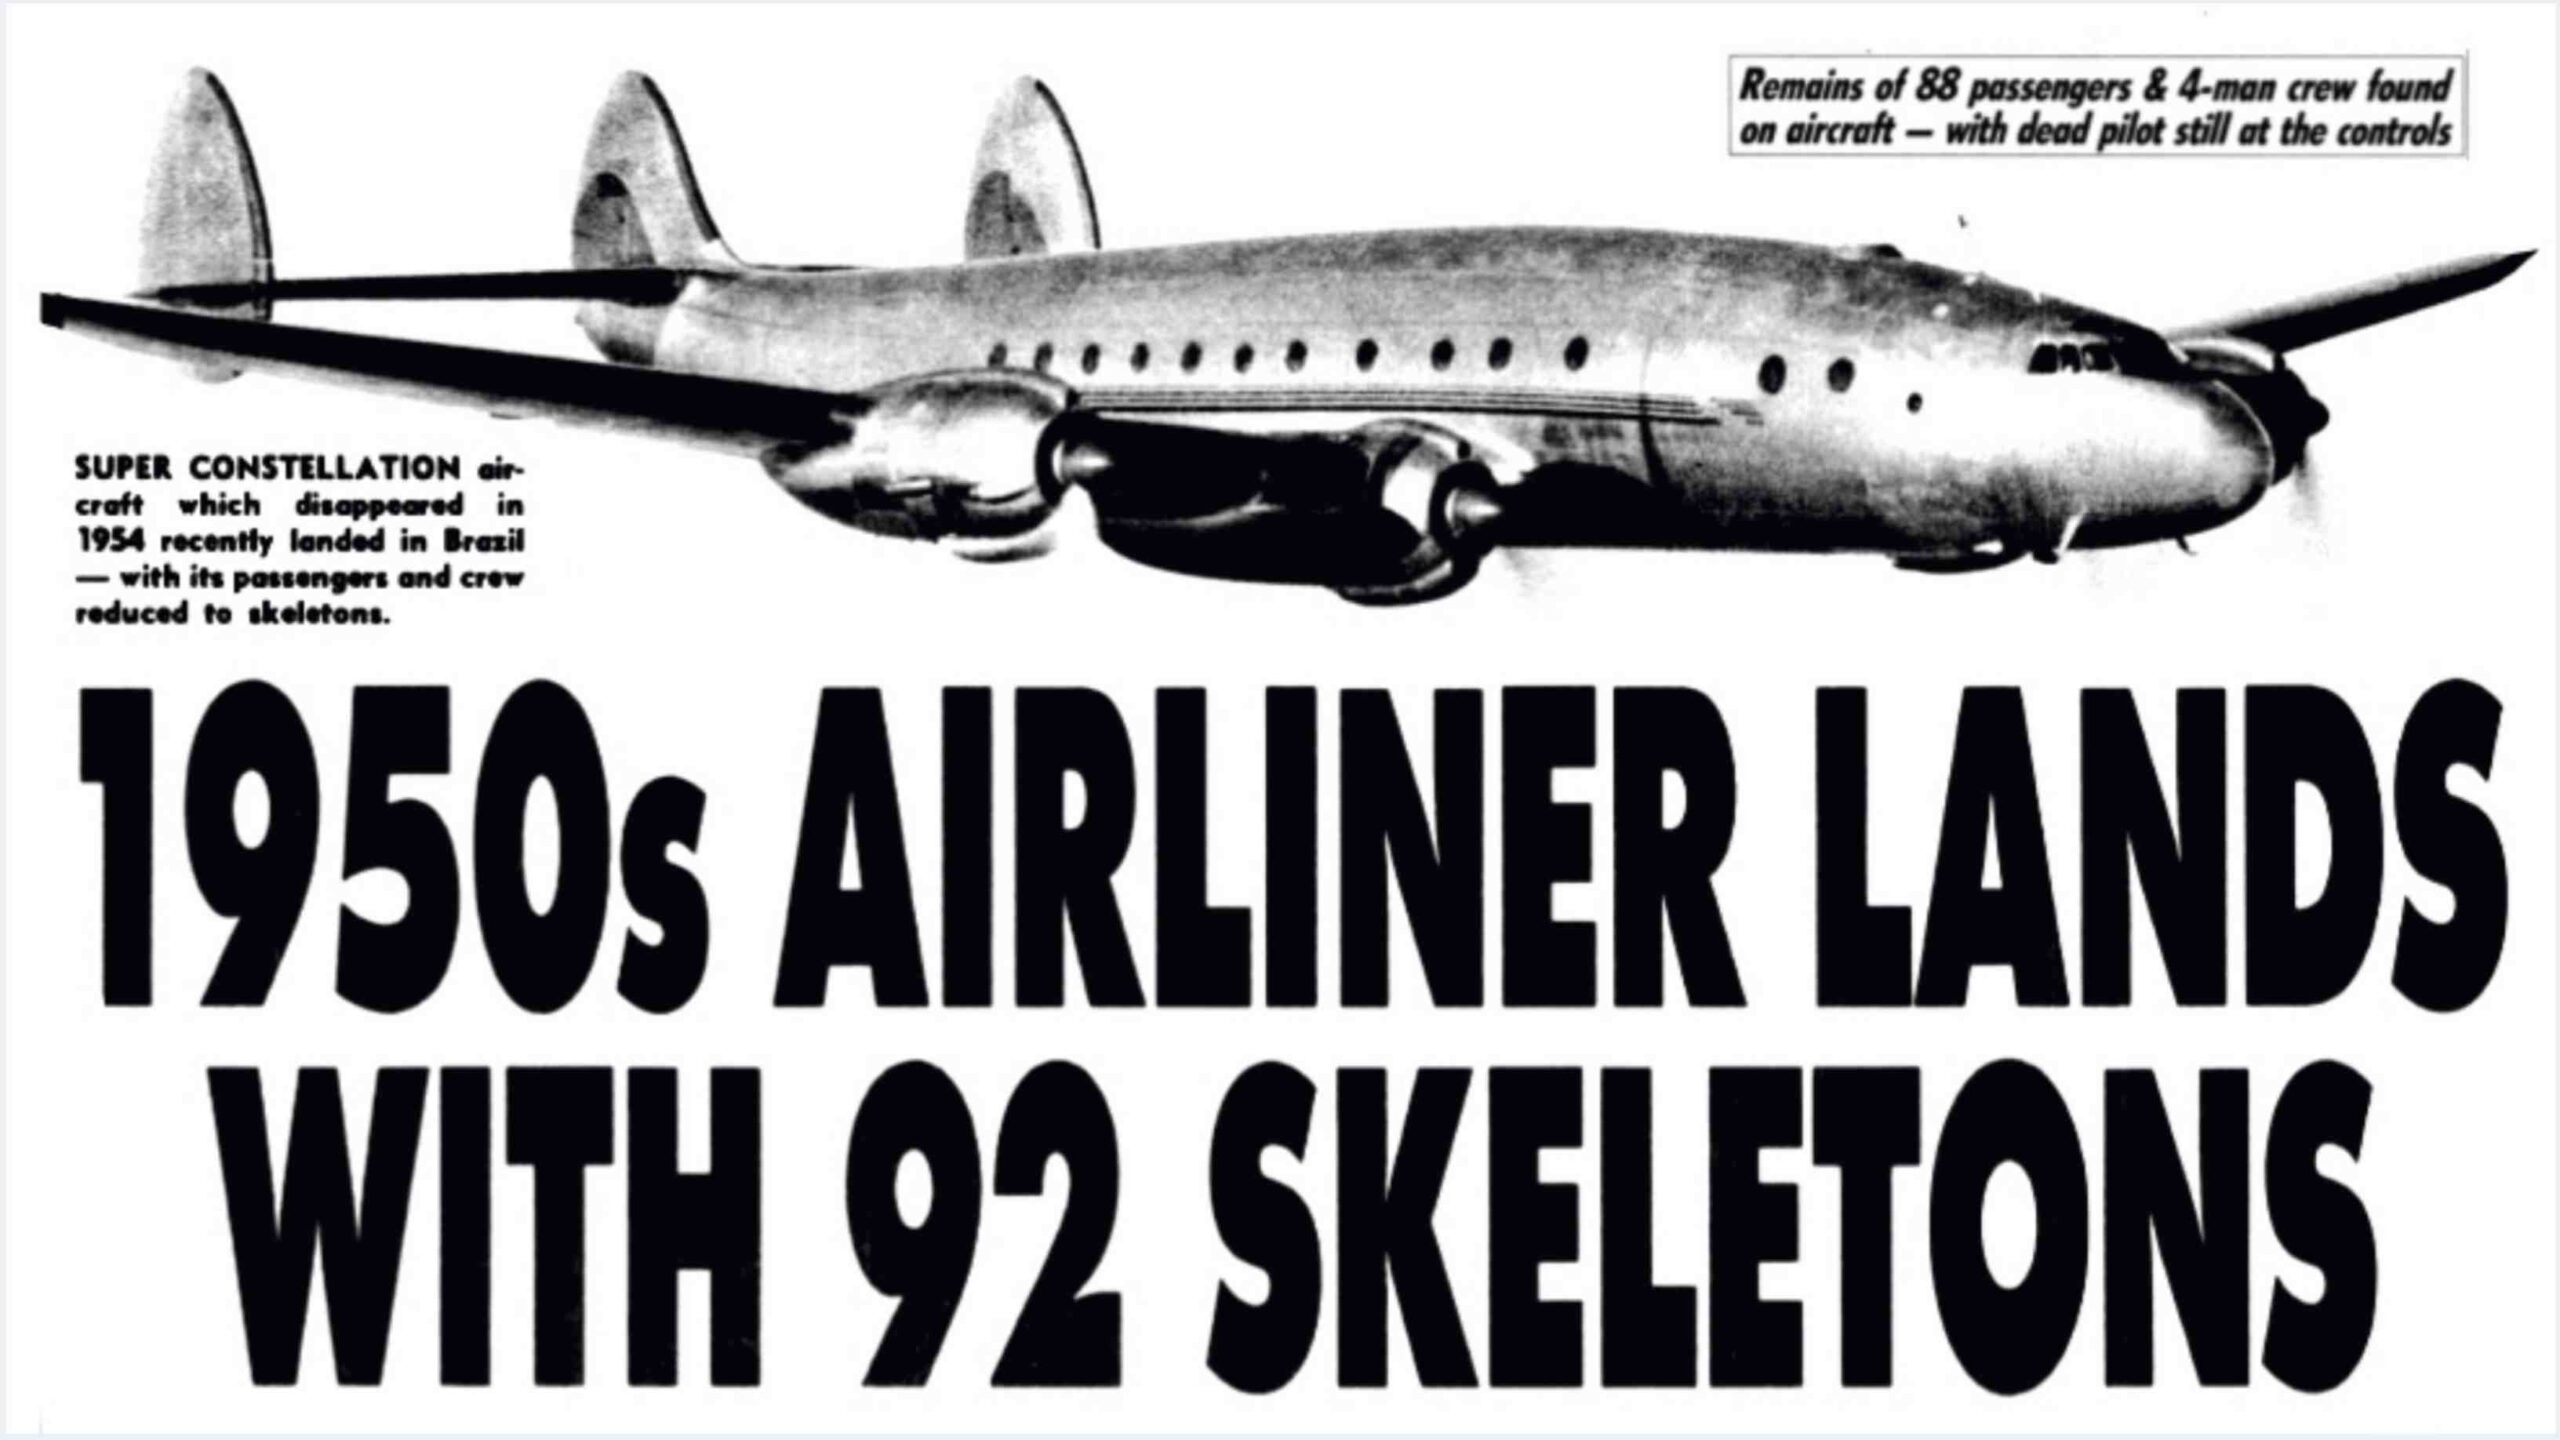 Πτήση 513 Σαντιάγο: Το αεροπλάνο, χαμένο για 35 χρόνια, προσγειώθηκε με 92 σκελετούς! 1